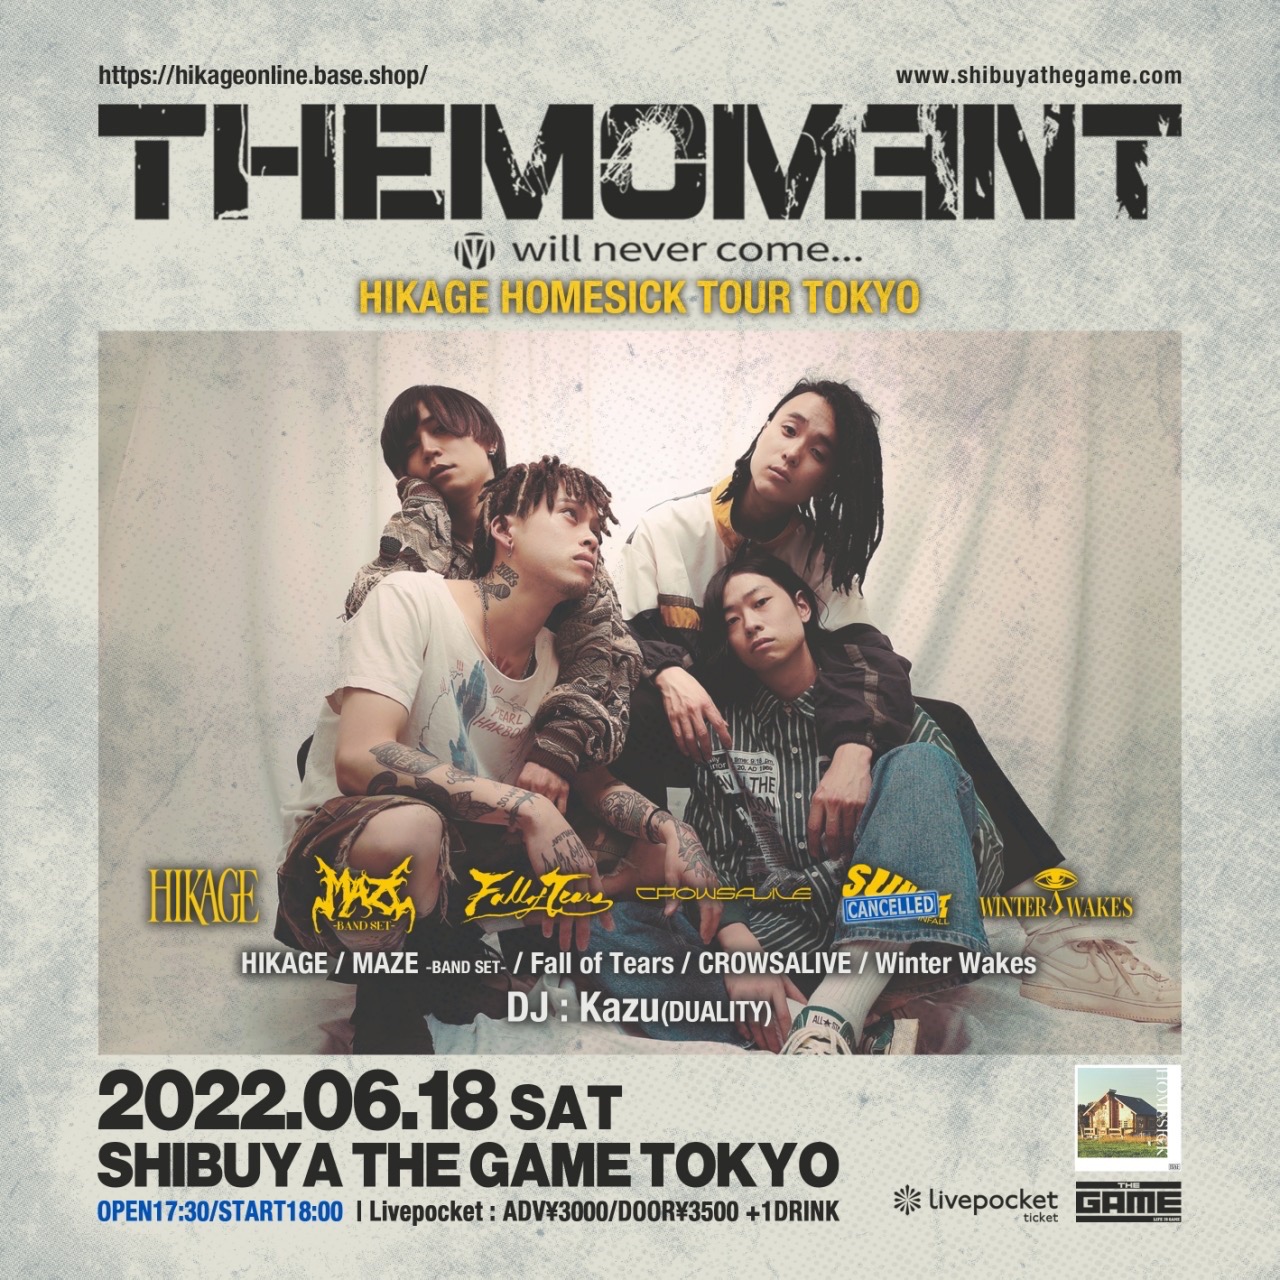 『THEMOMENT』 -HIKAGE HOMESICK TOUR TOKYO-